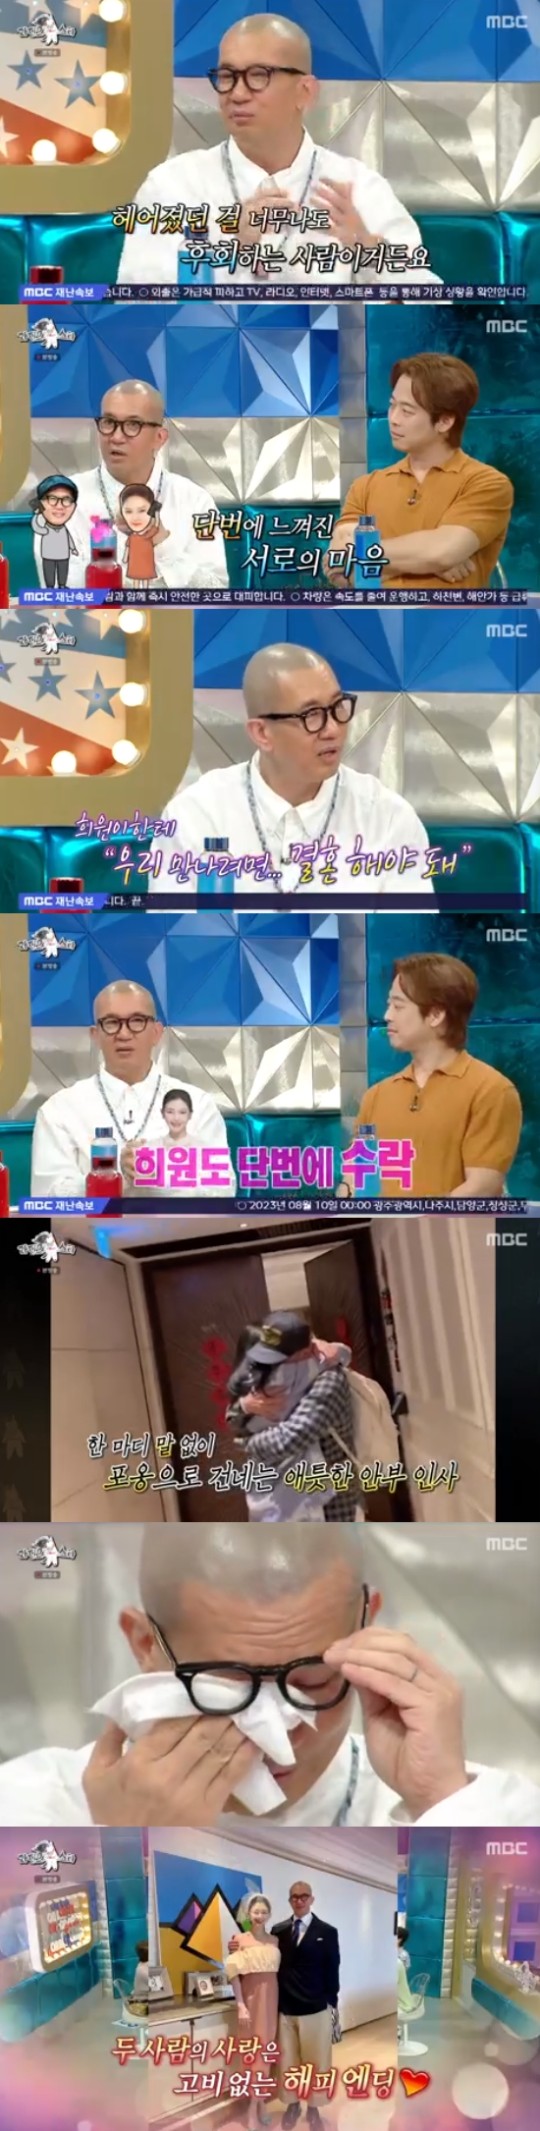 MBC 예능 프로그램 '라디오스타' 방송캡처